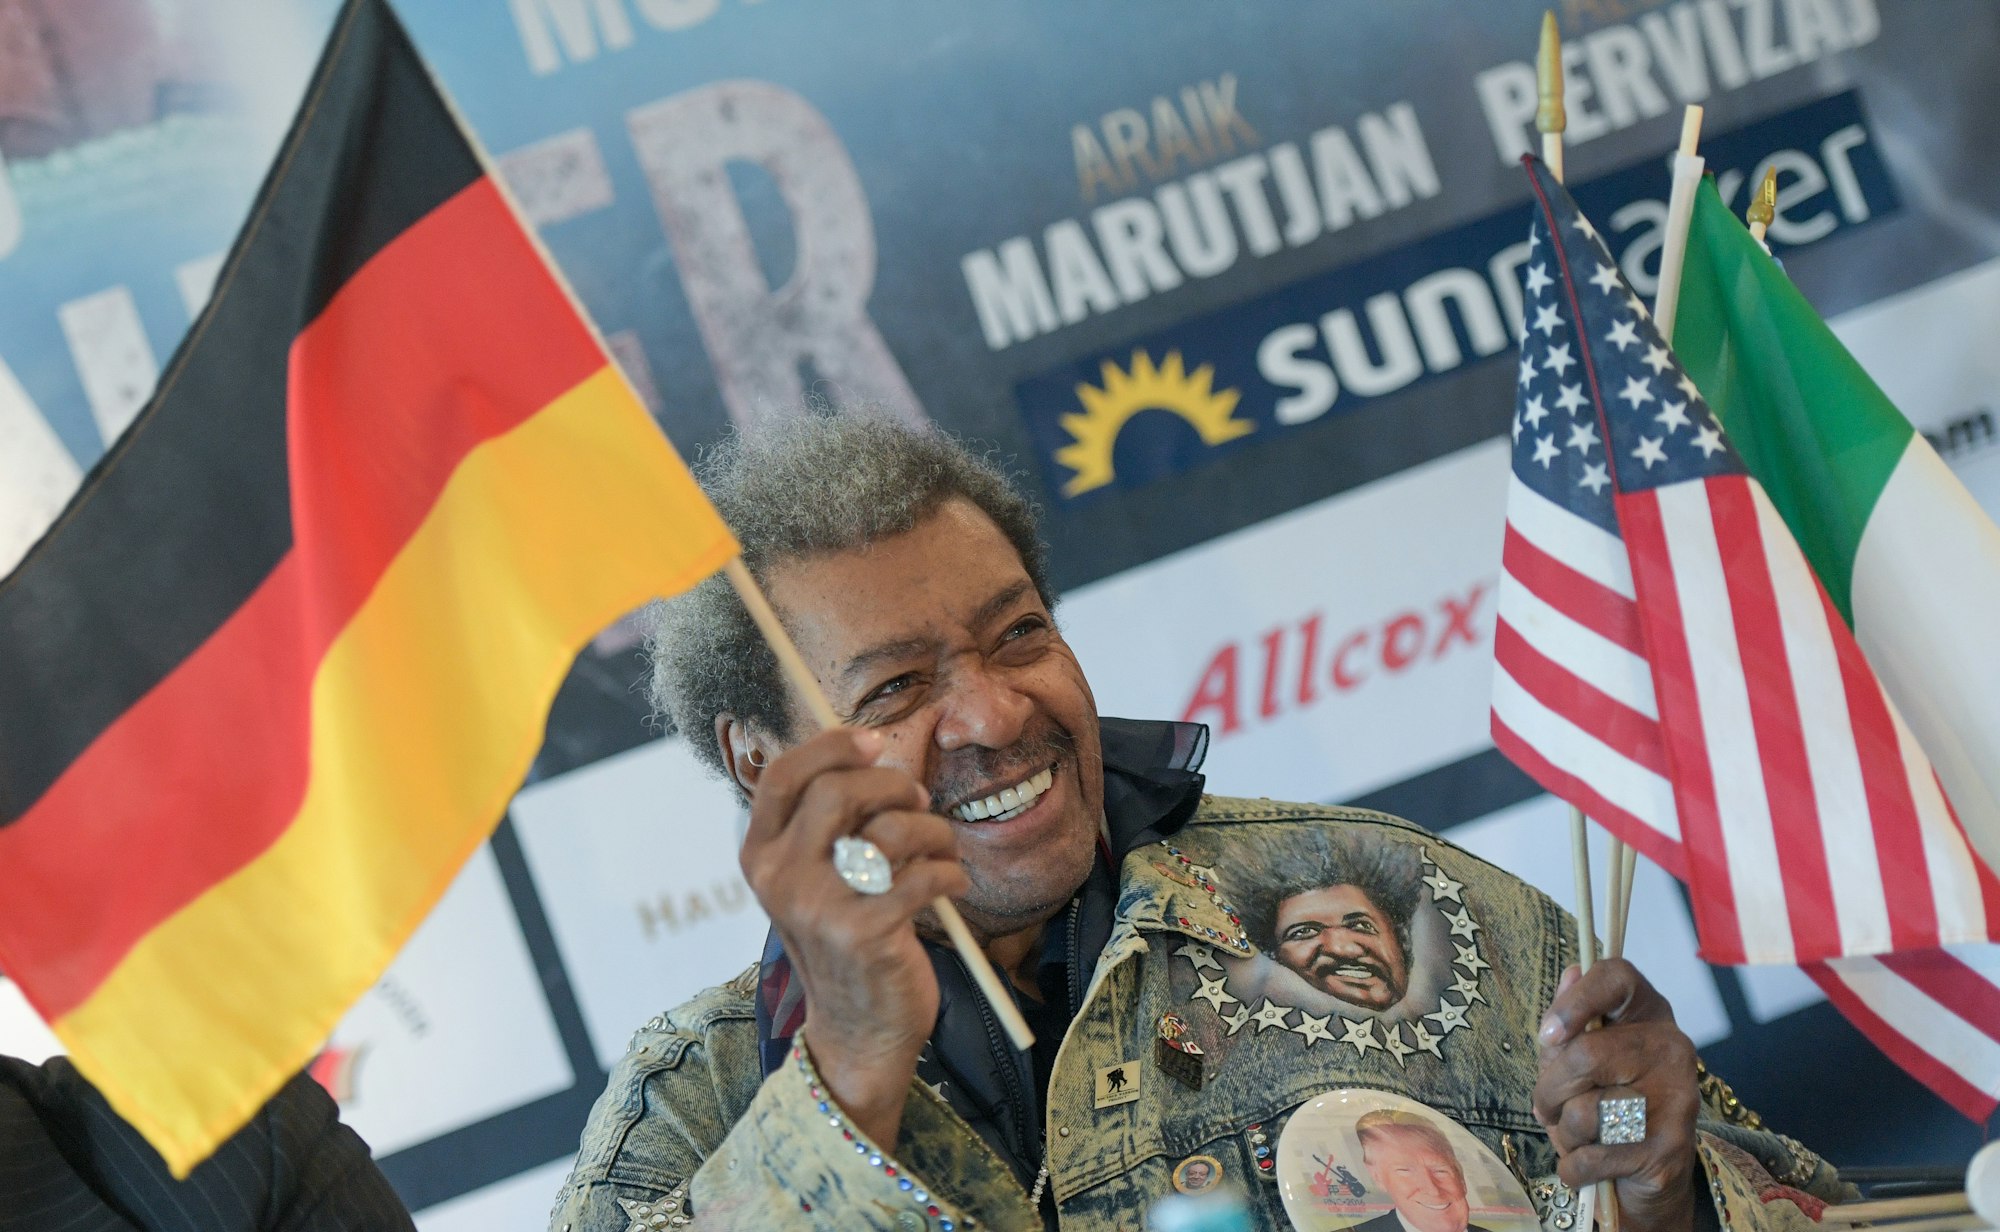 Don King, US-Boxpromoter, schwenkt während der Pressekonferenz eine deutsche Flagge, während er weitere Fähnchen in der Hand hält.